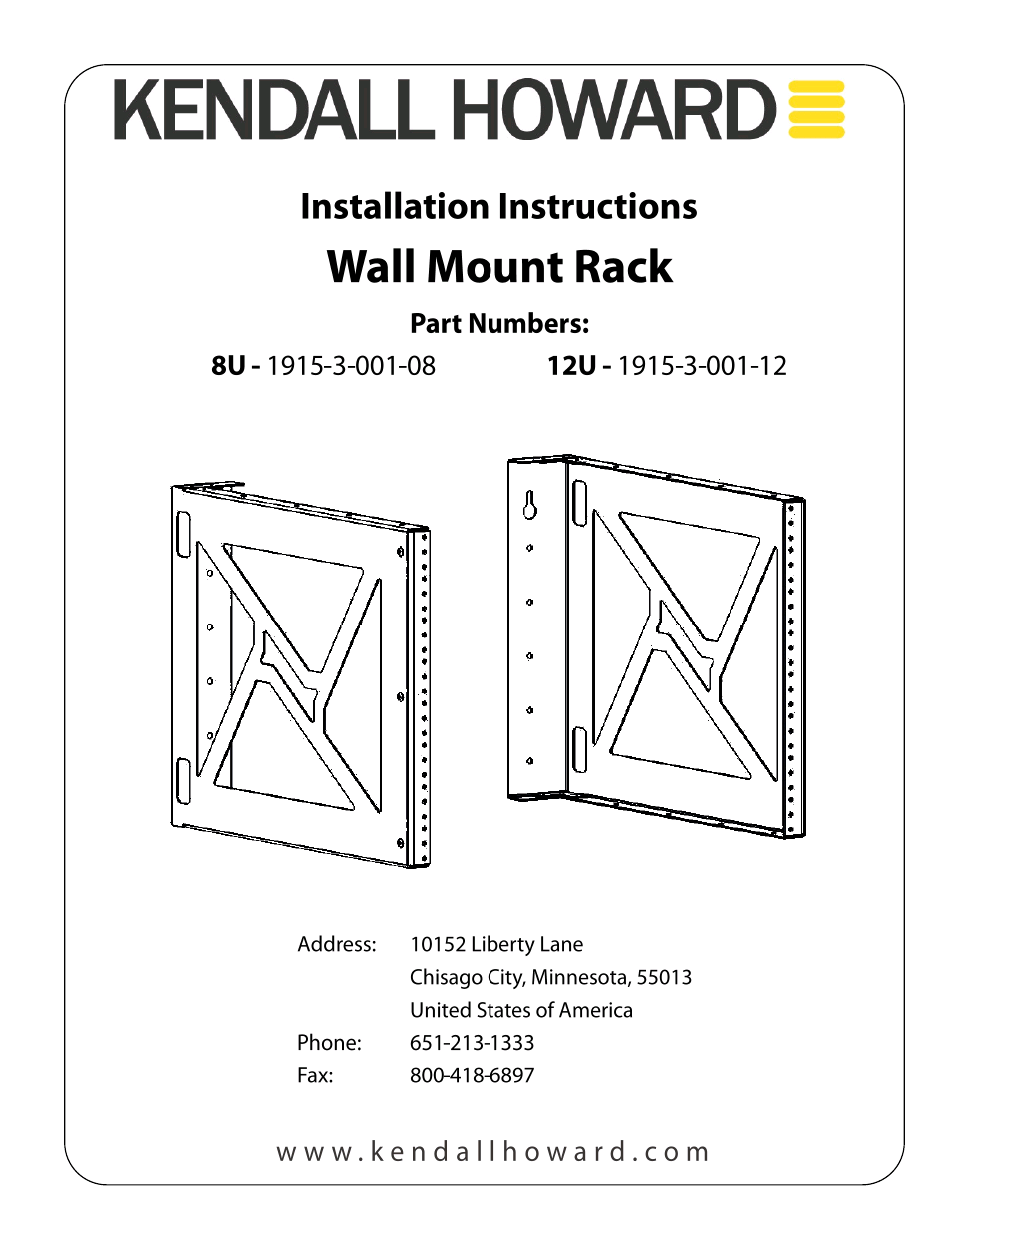 1915-3-001-12 12U Wall Mount Rack